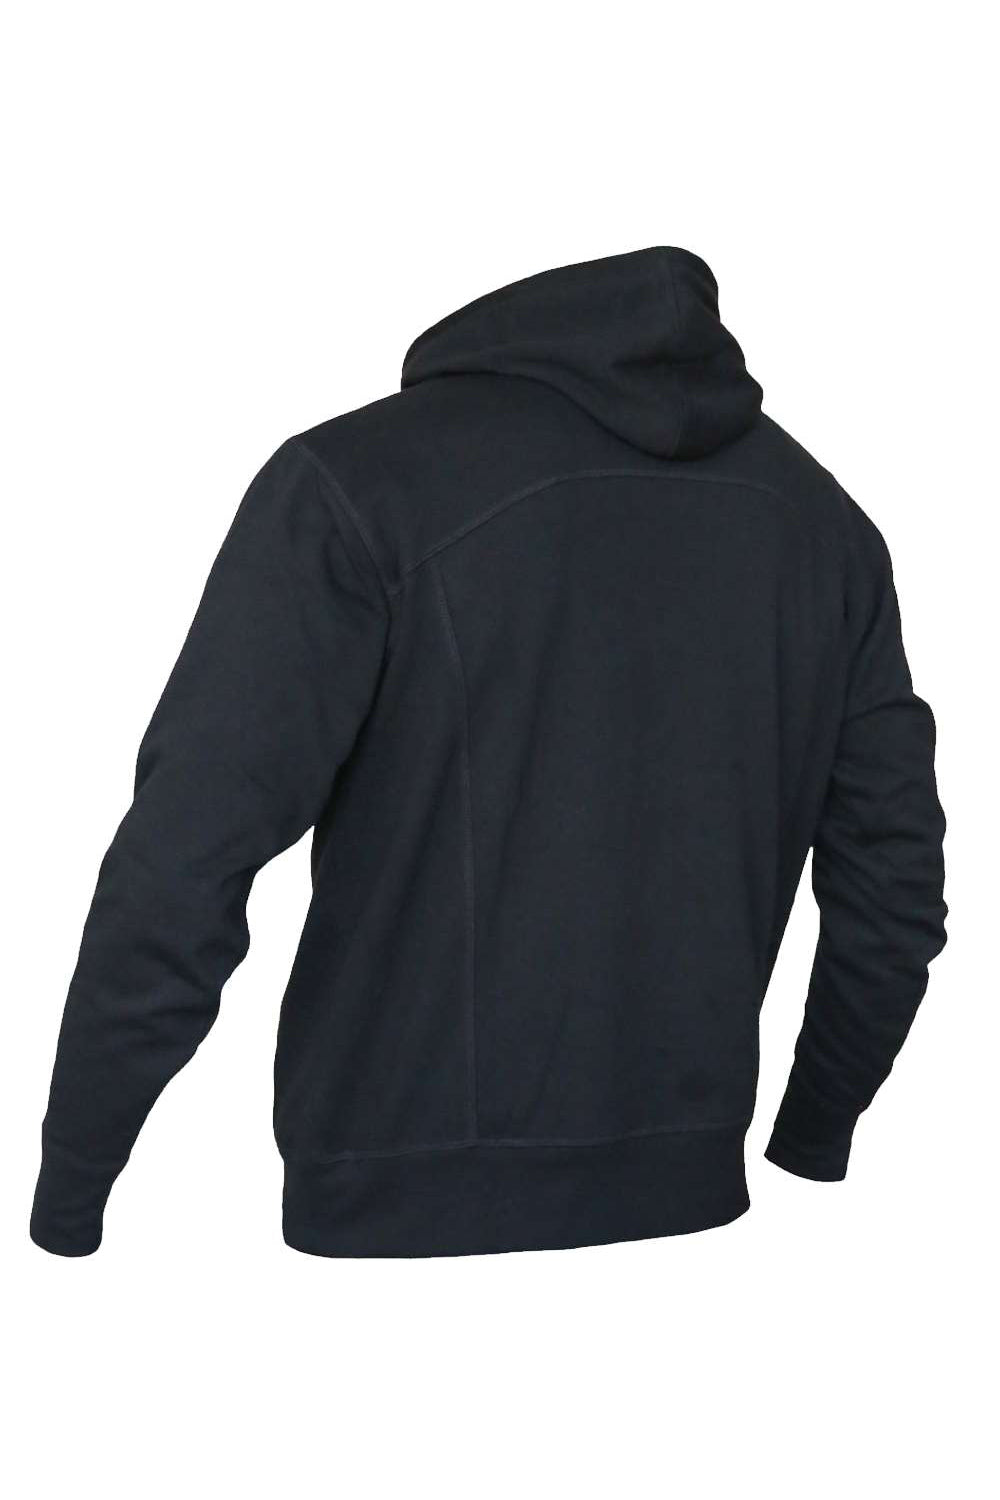 Quikflip LAFZH Mens 2-in-1 Hero Lite Full Zip Hooded Sweatshirt Hoodie Black Flat Back